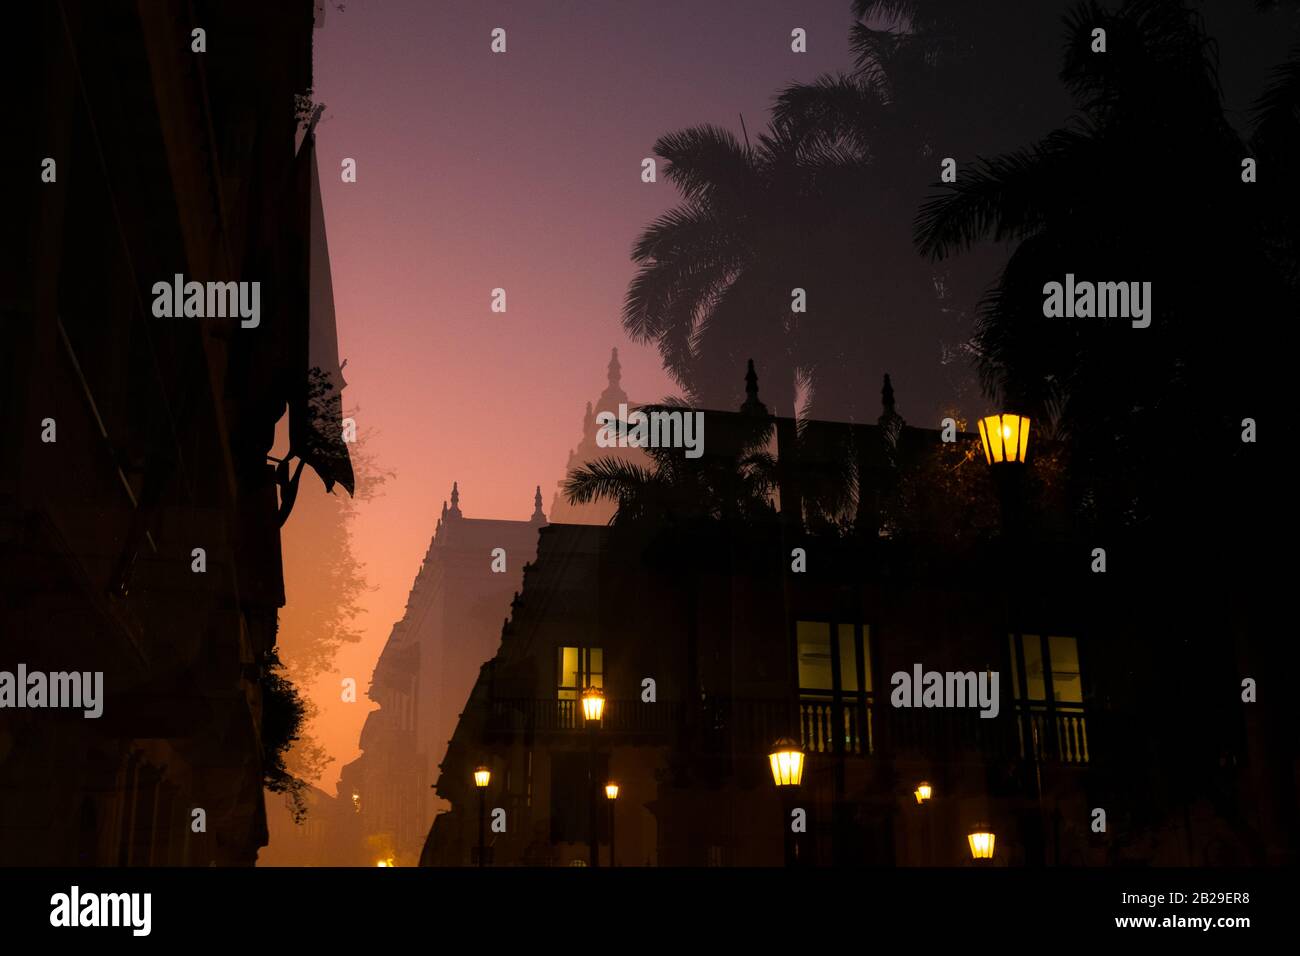 Doppelbelichtung von Palmen und einem Gebäude bei Sonnenuntergang, Cartagena, Kolumbien Stockfoto